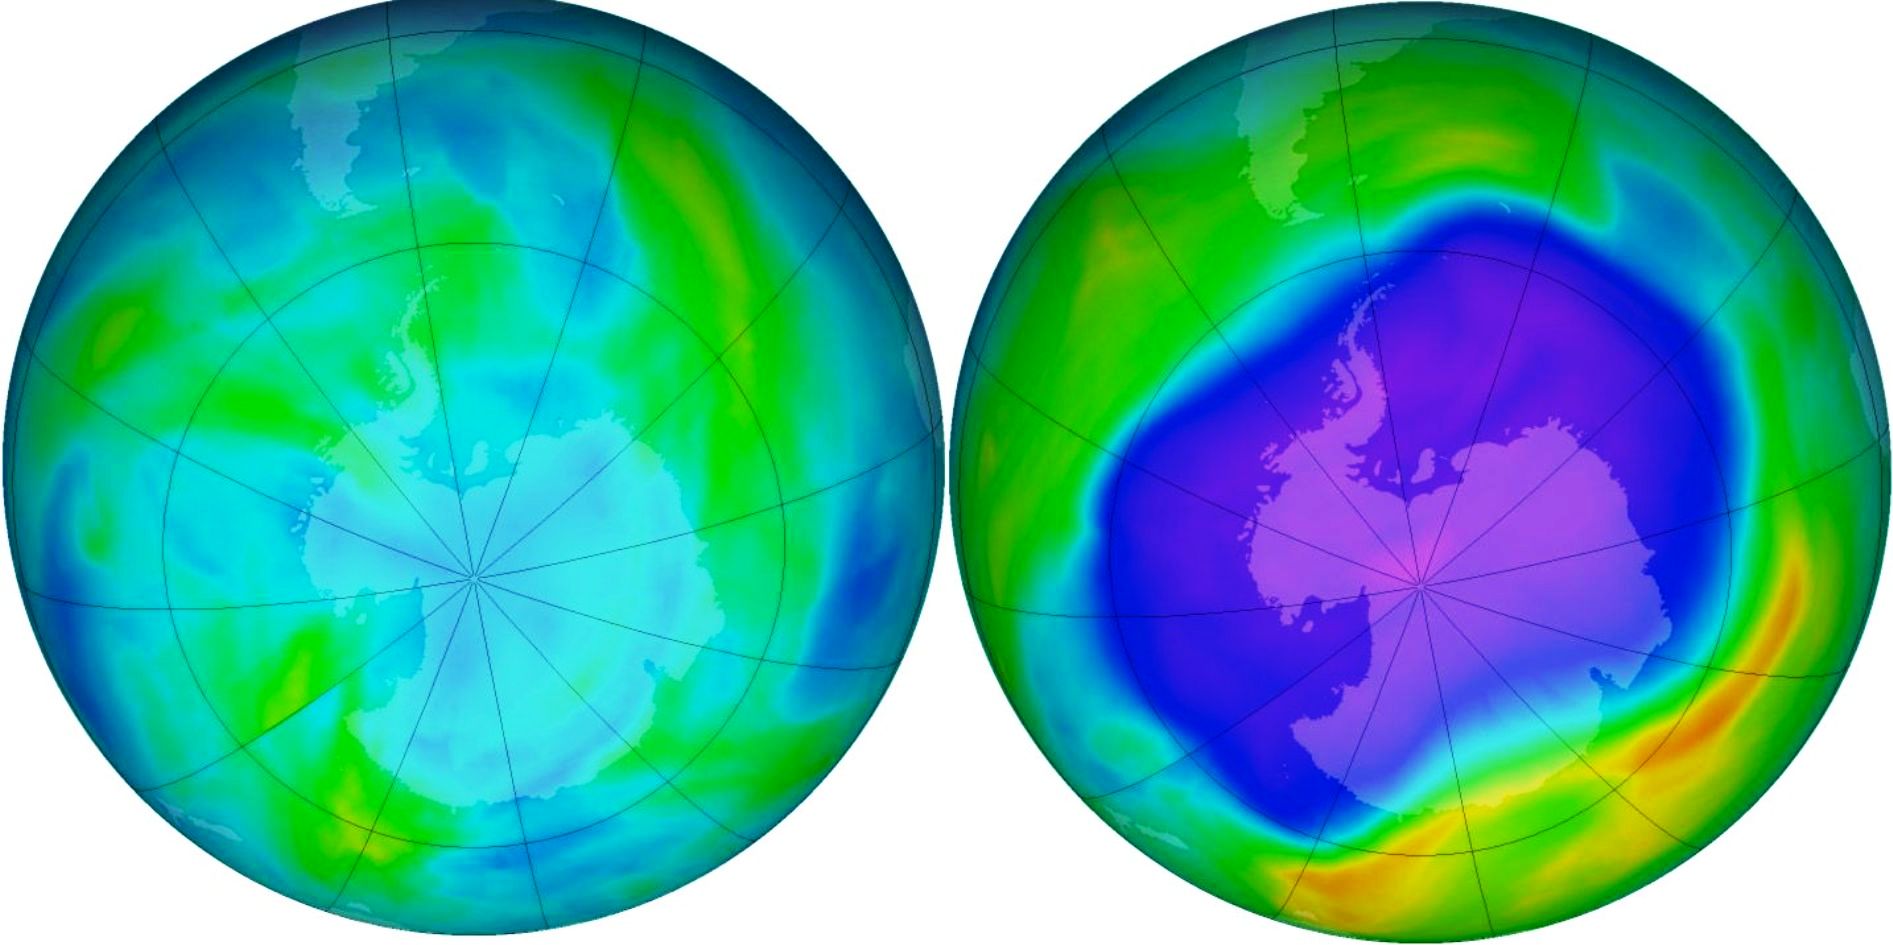 Le trou dans la couche d’ozone au-dessus de l’Antarctique s’ouvre et se ferme au gré des saisons. Durant l'hiver austral, l'ozone stratosphérique est en quantité normale (l'image de gauche montre la situation en avril 2006). La quasi-totalité se trouve détruite chaque année au printemps austral (comme sur l'image de droite, en septembre 2006). L’épaisseur totale d’ozone est alors diminuée de moitié. Une diminution de l’ozone se produit également, mais avec une moindre amplitude, au printemps boréal au-dessus de l’Arctique. © NOAA, KNMI, ESA